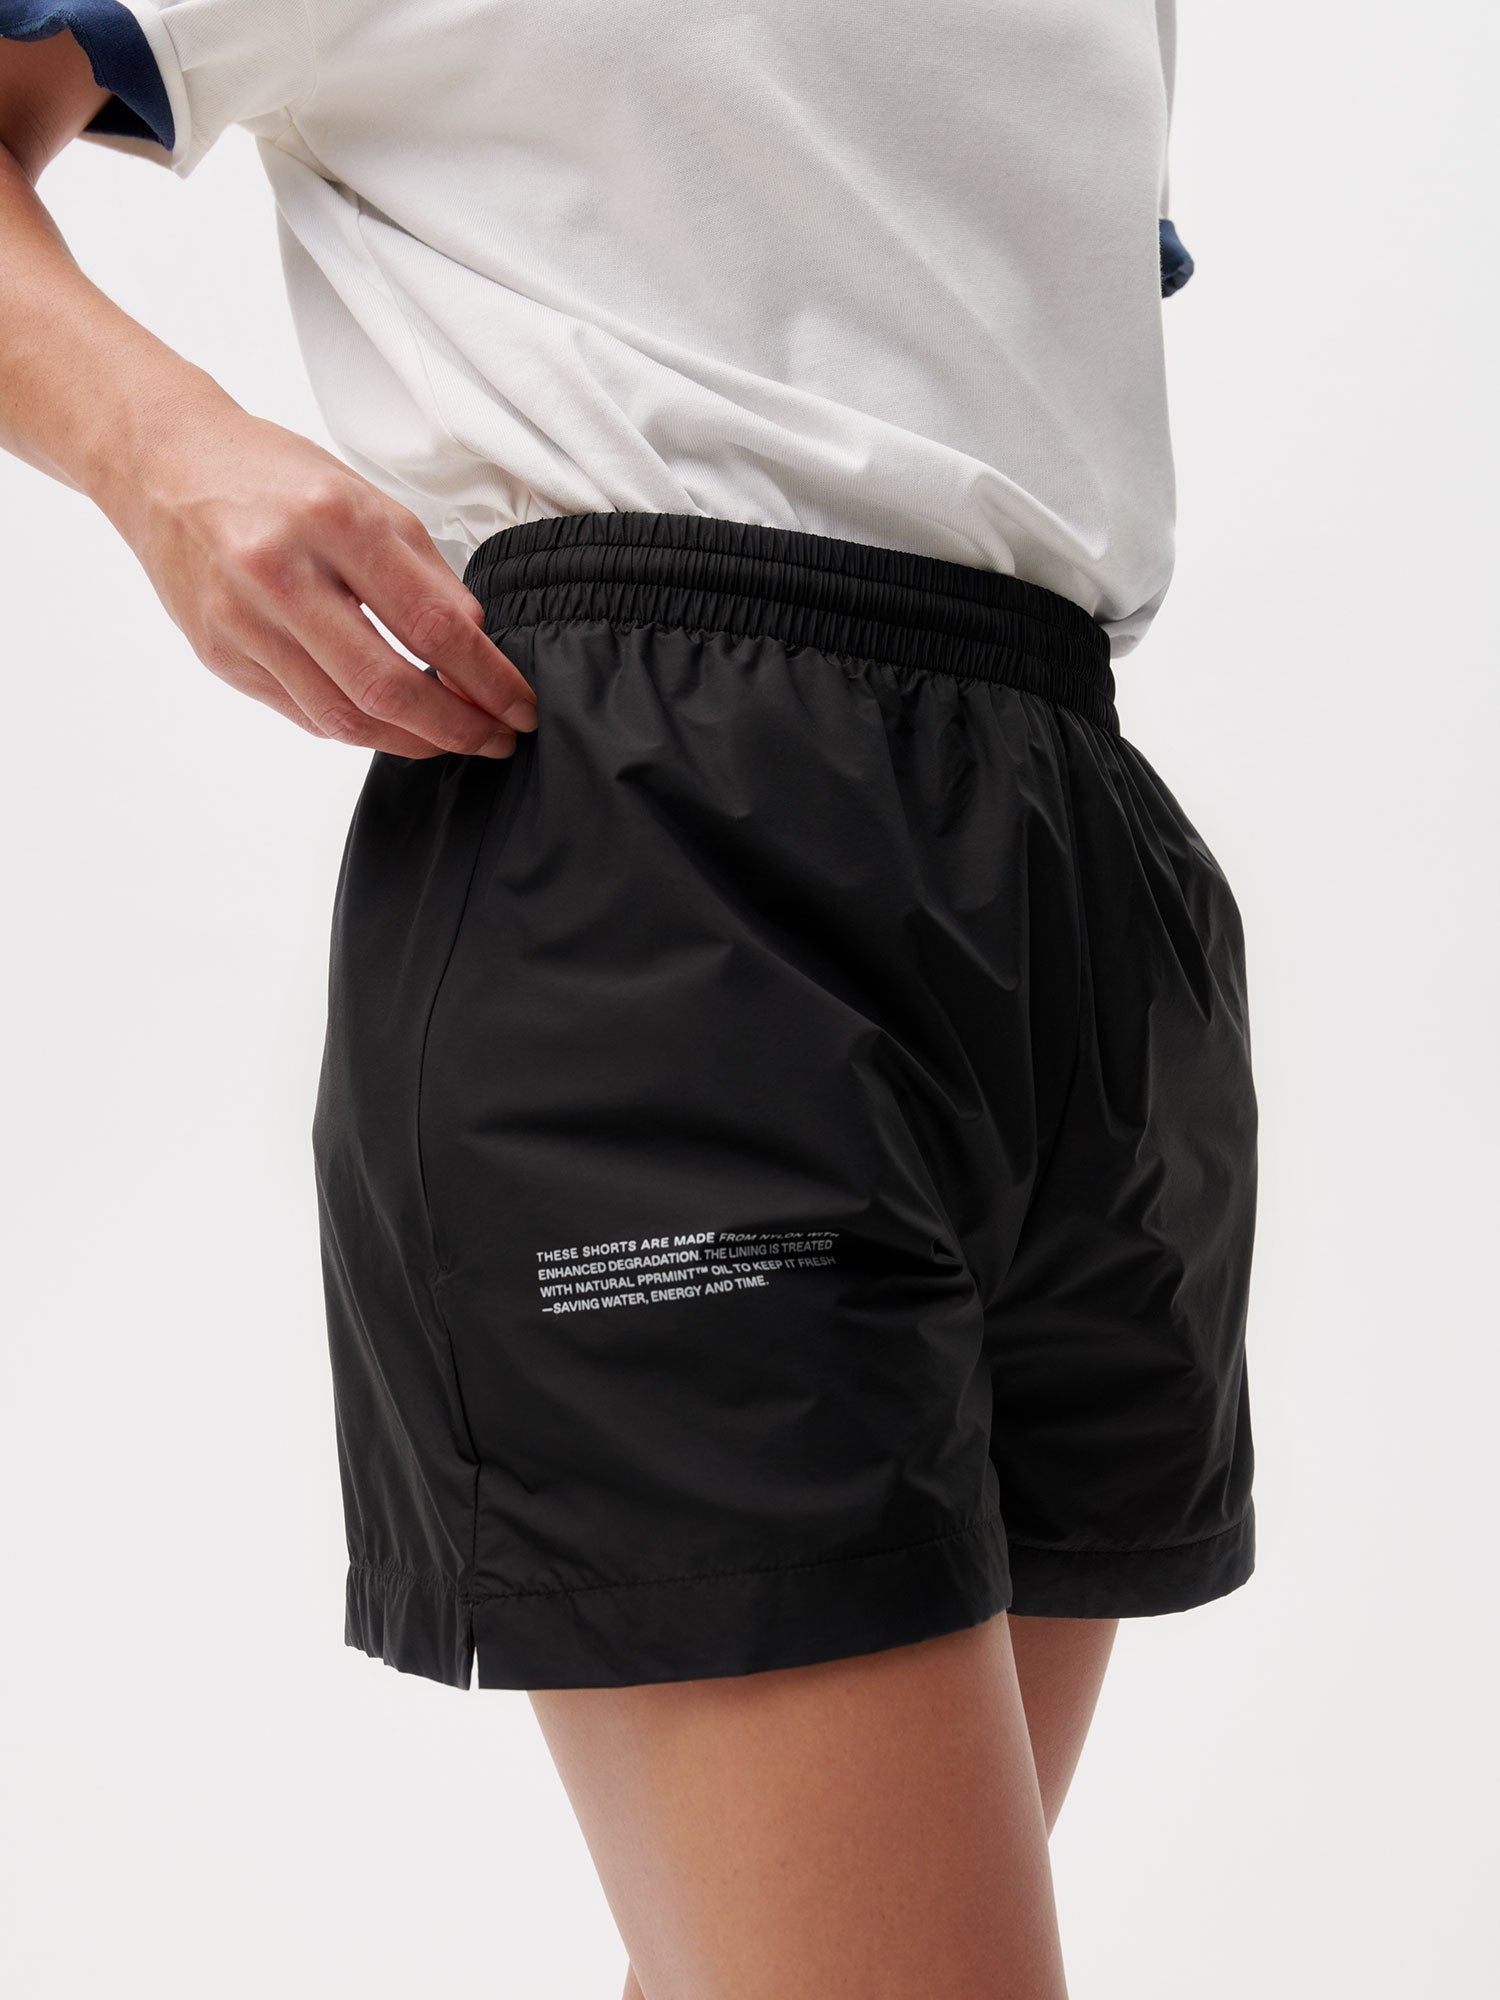 ENNOY nylon shorts black 2020 旧タグ エンノイ - ショートパンツ